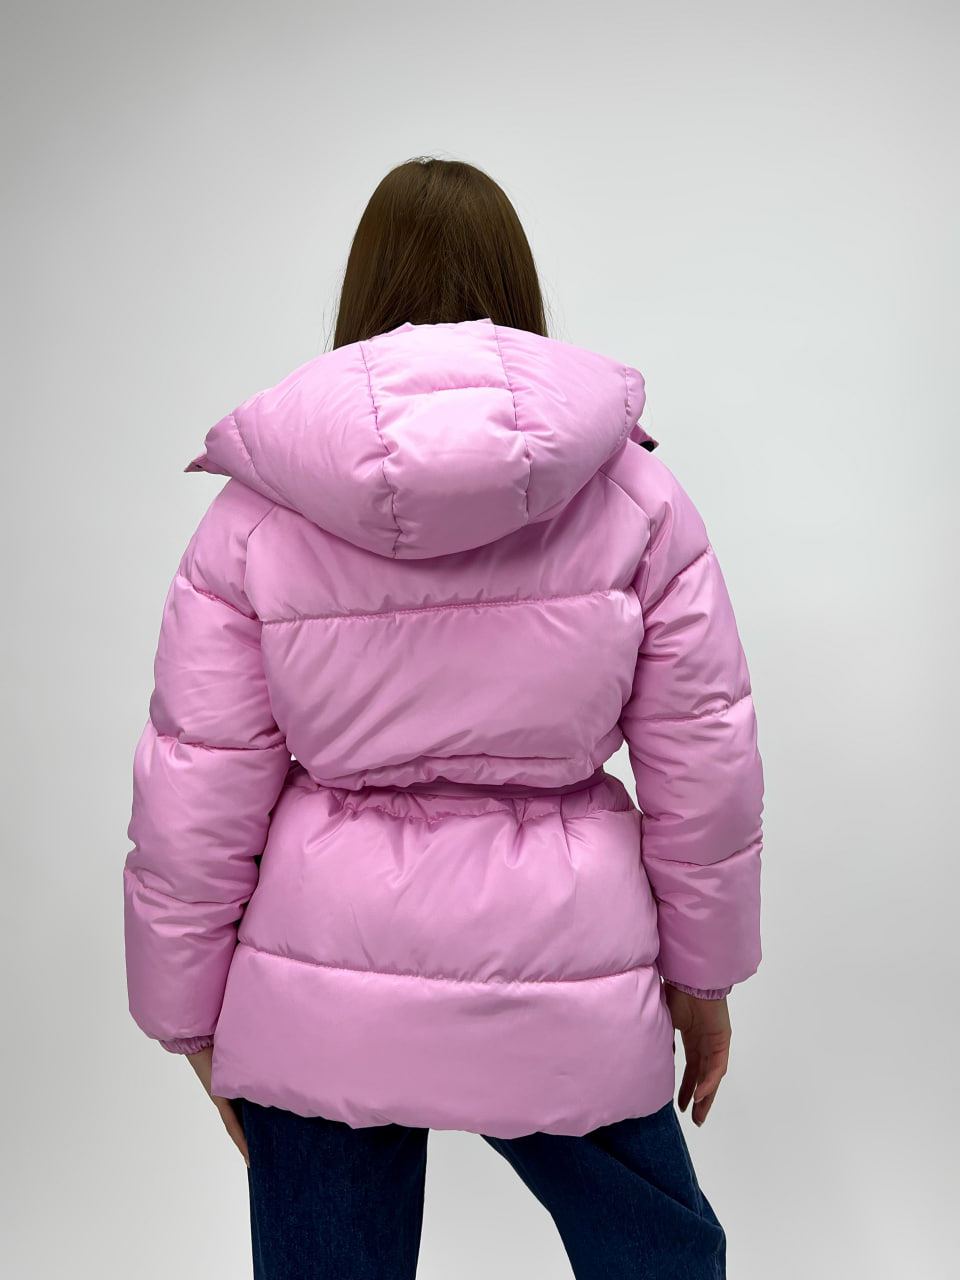 Женская зимняя куртка-пуховик Reload Elly розовый/ Зимний короткий пуховик оверсайз стильный теплый - Фото 7